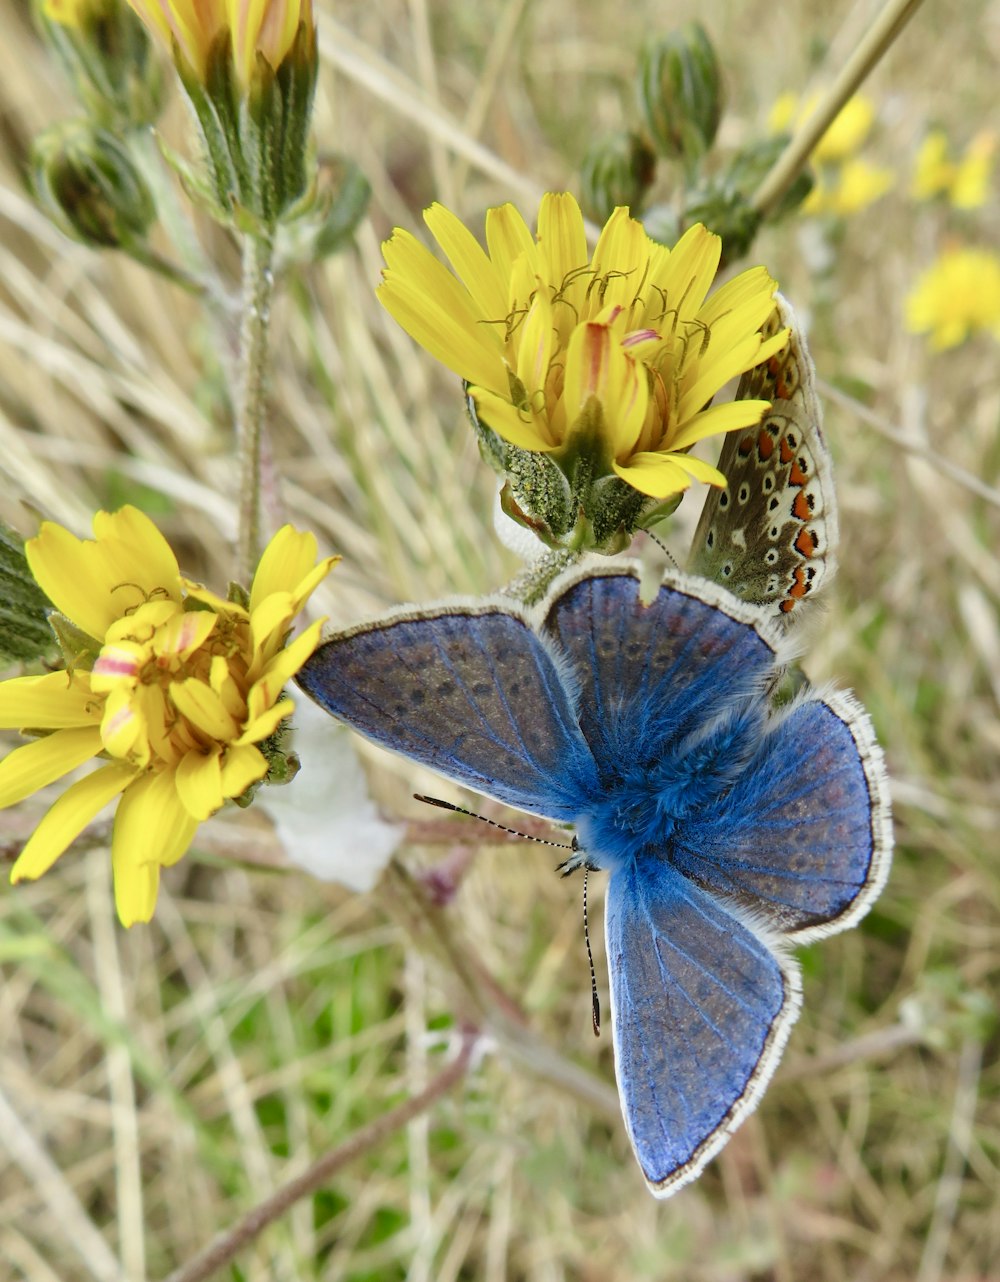 borboleta azul e branca empoleirada na flor amarela